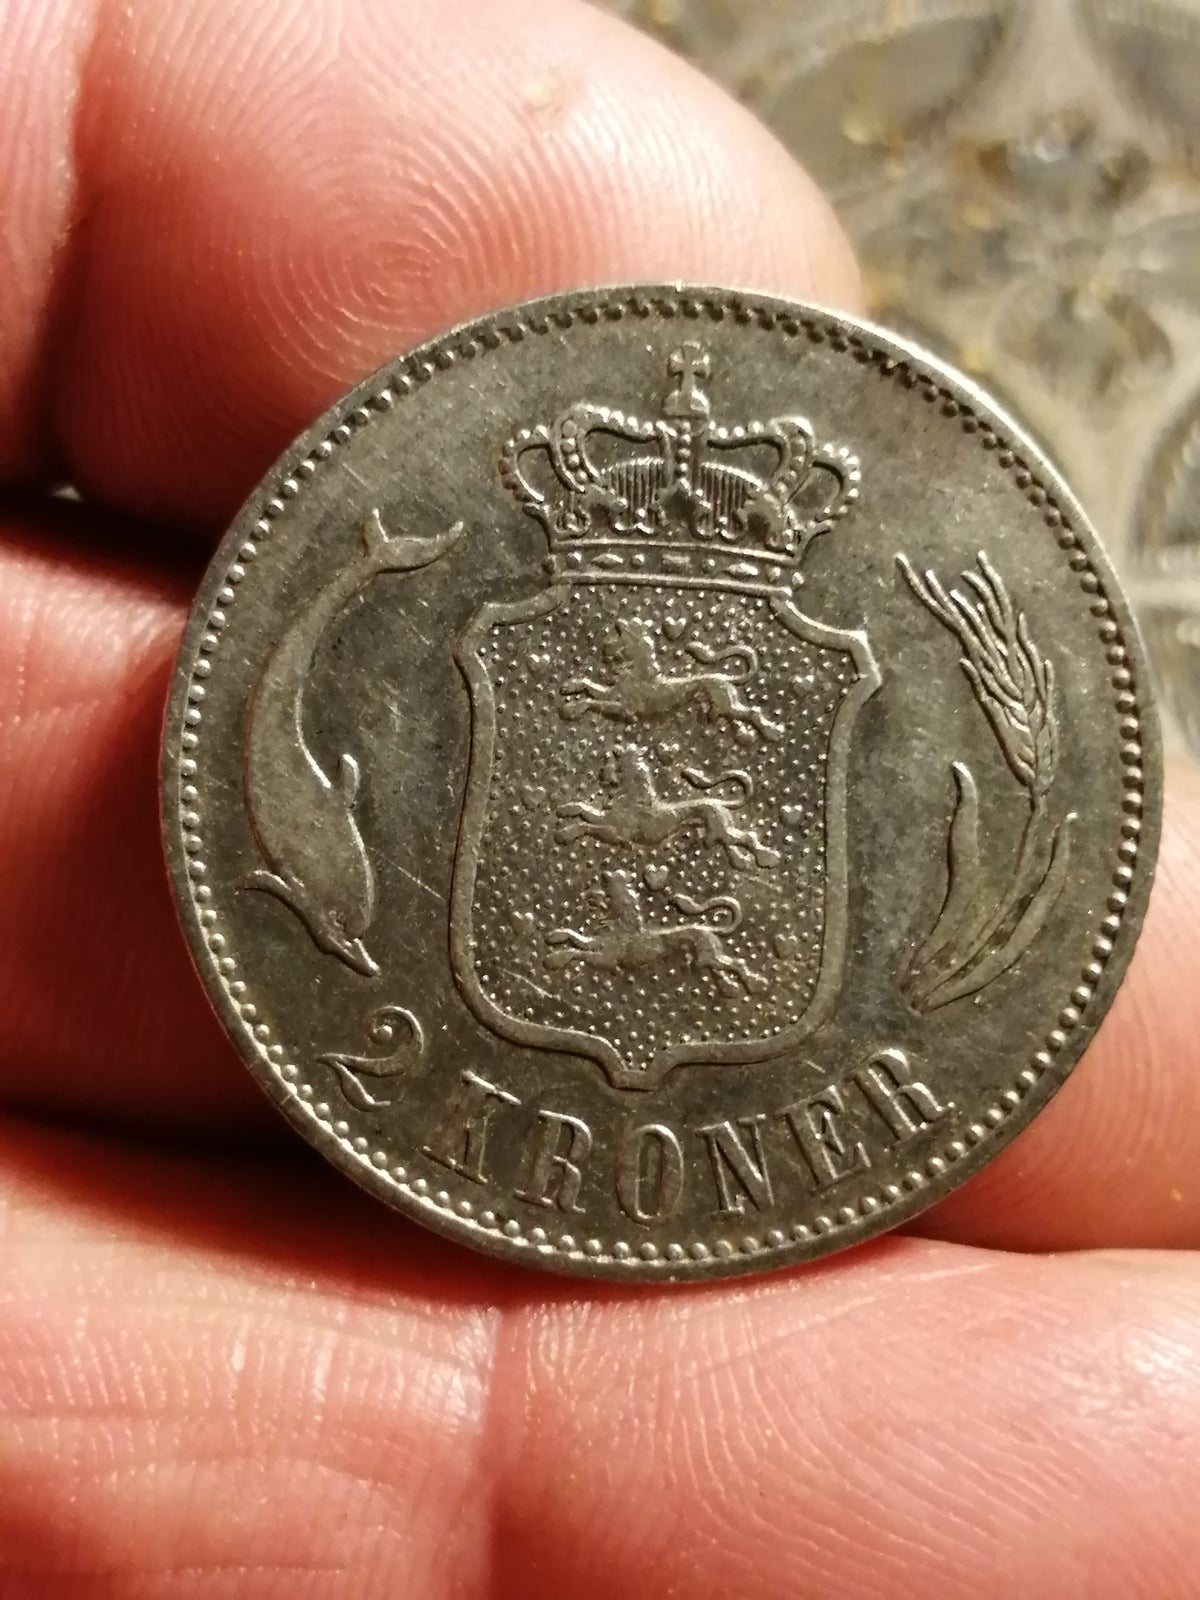 Danmark, mønter, 2 kroner